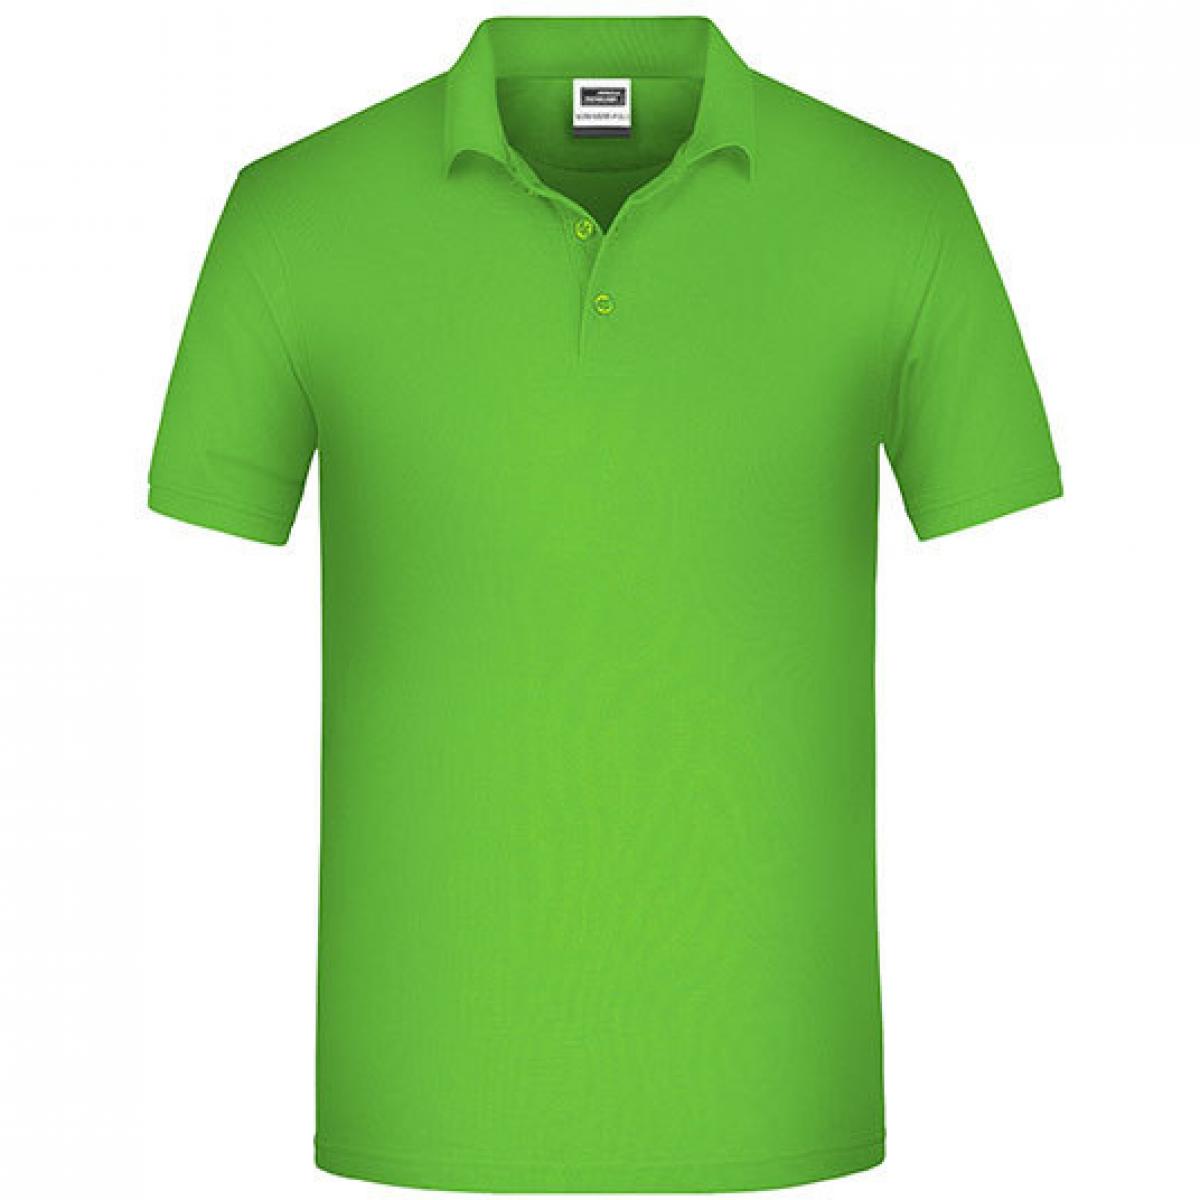 Hersteller: James+Nicholson Herstellernummer: JN874 Artikelbezeichnung: Herren Bio Workwear Polo, Bio-Baumwolle und Polyester Farbe: Lime Green